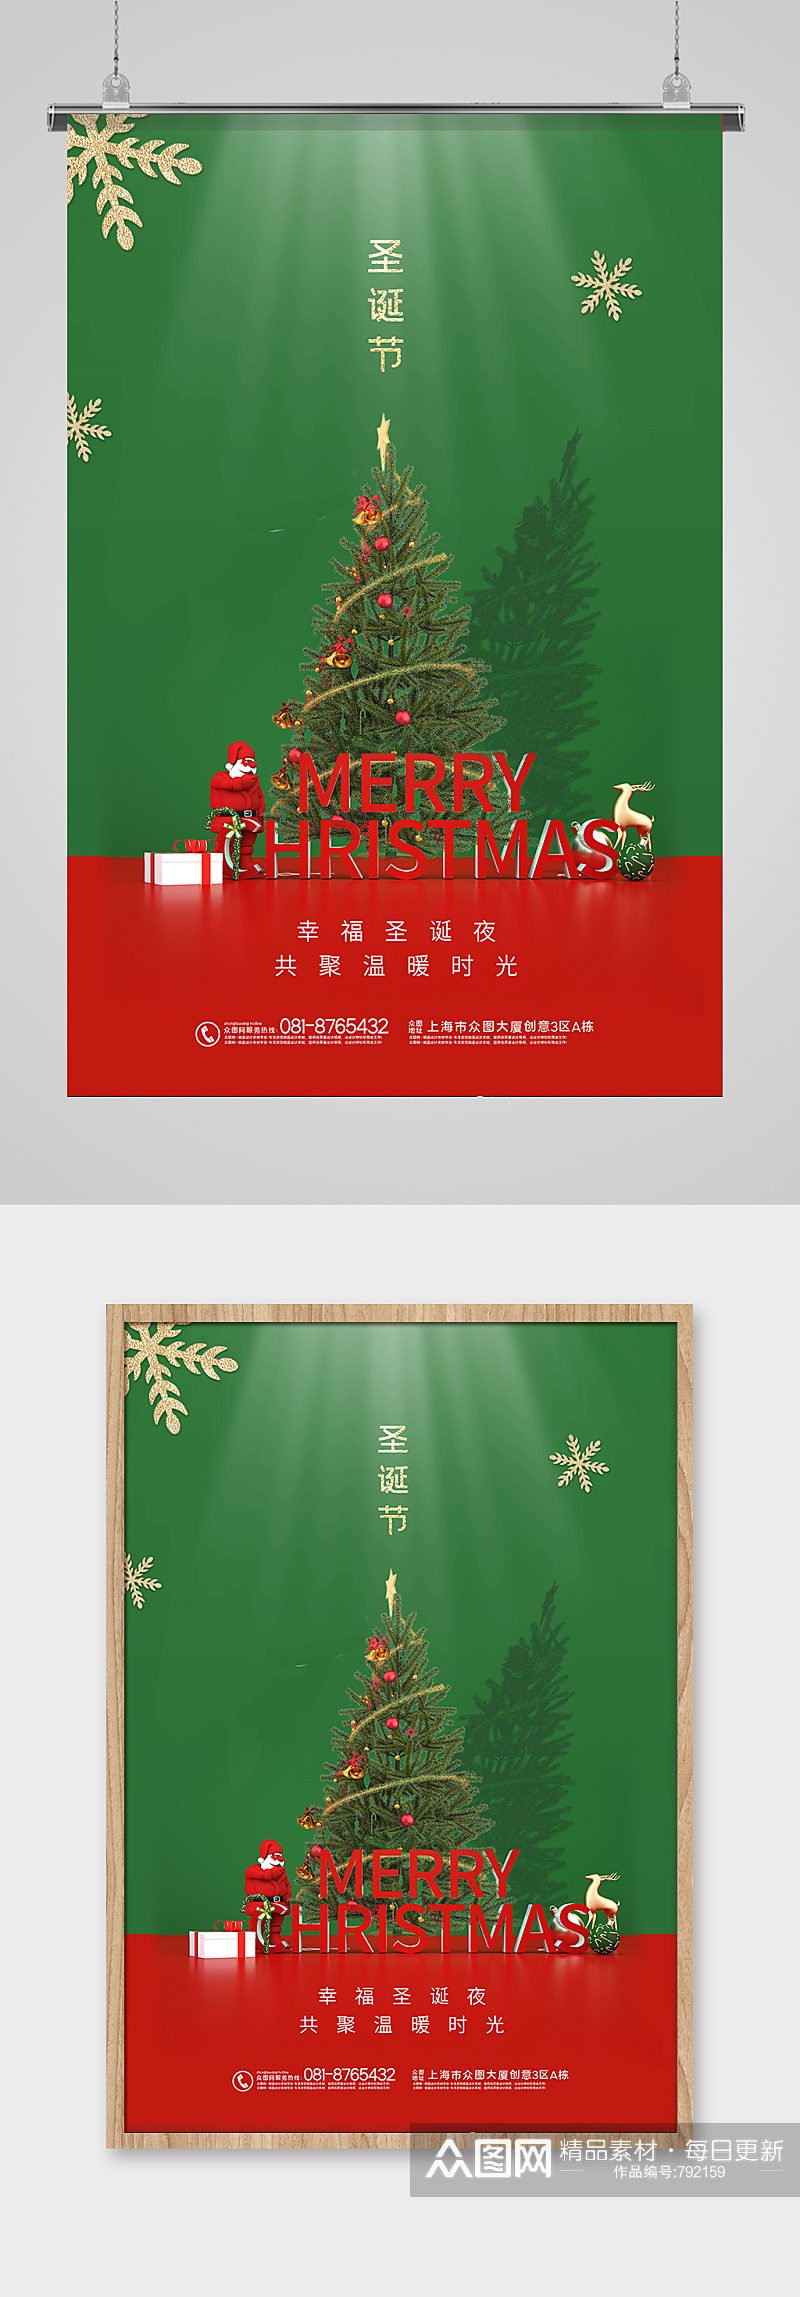 圣诞节节日快乐海报设计素材